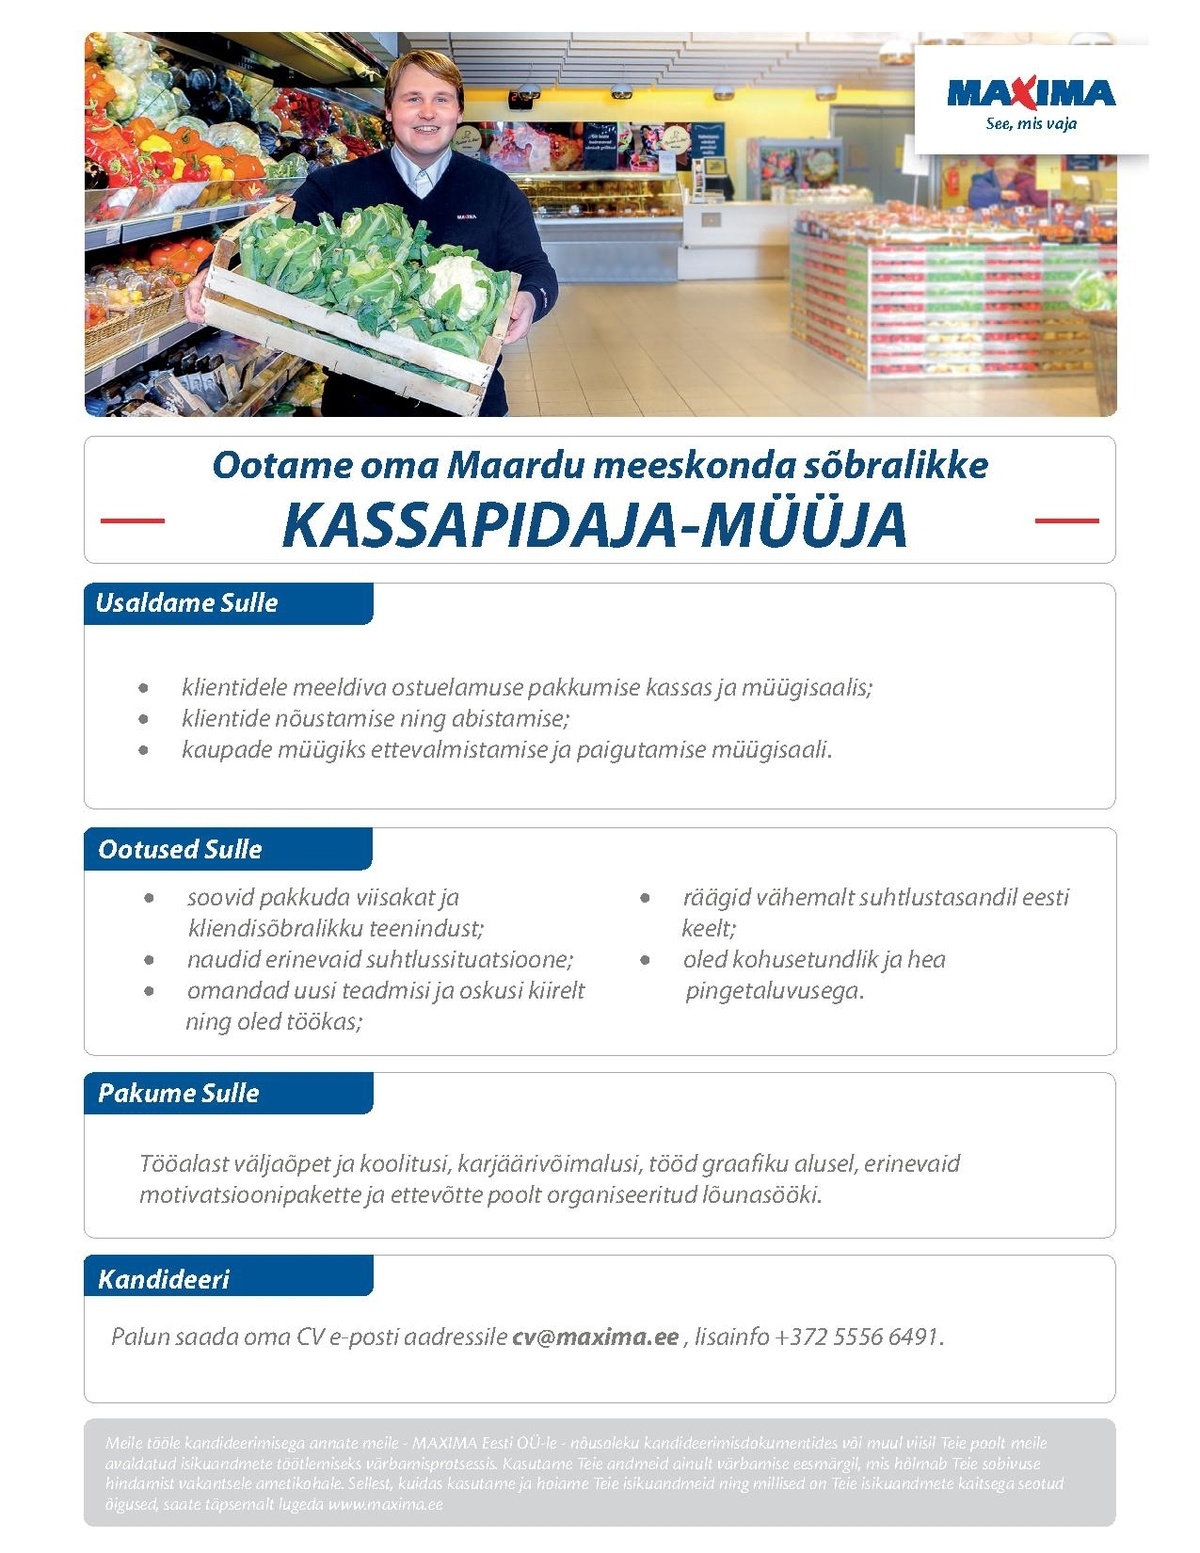 Maxima Eesti OÜ Kassapidaja-müüja Maardu Maximas